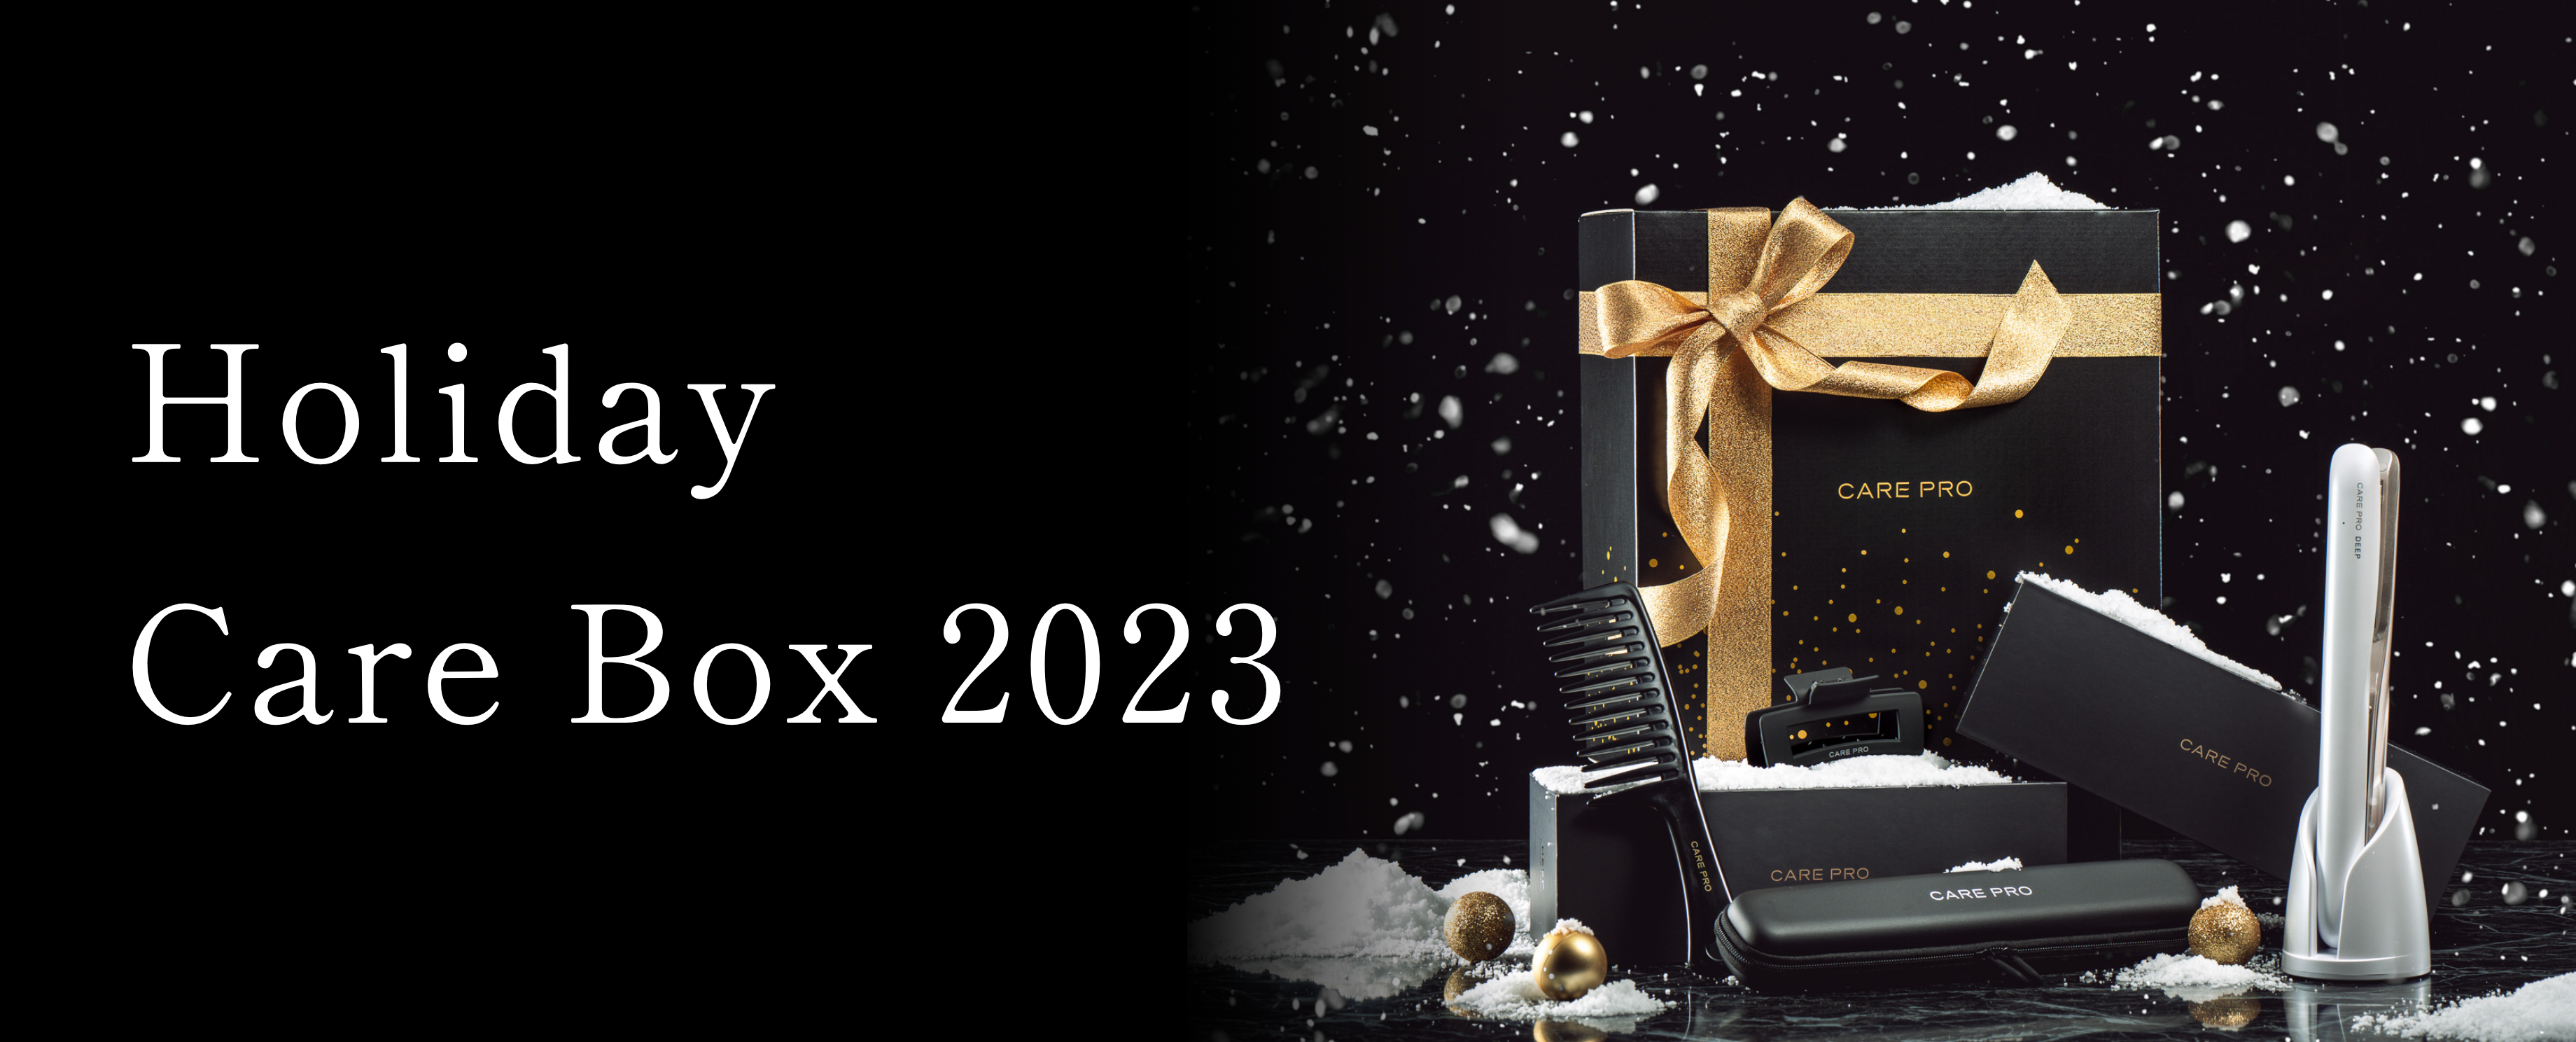 Christmas CARE BOX 2023